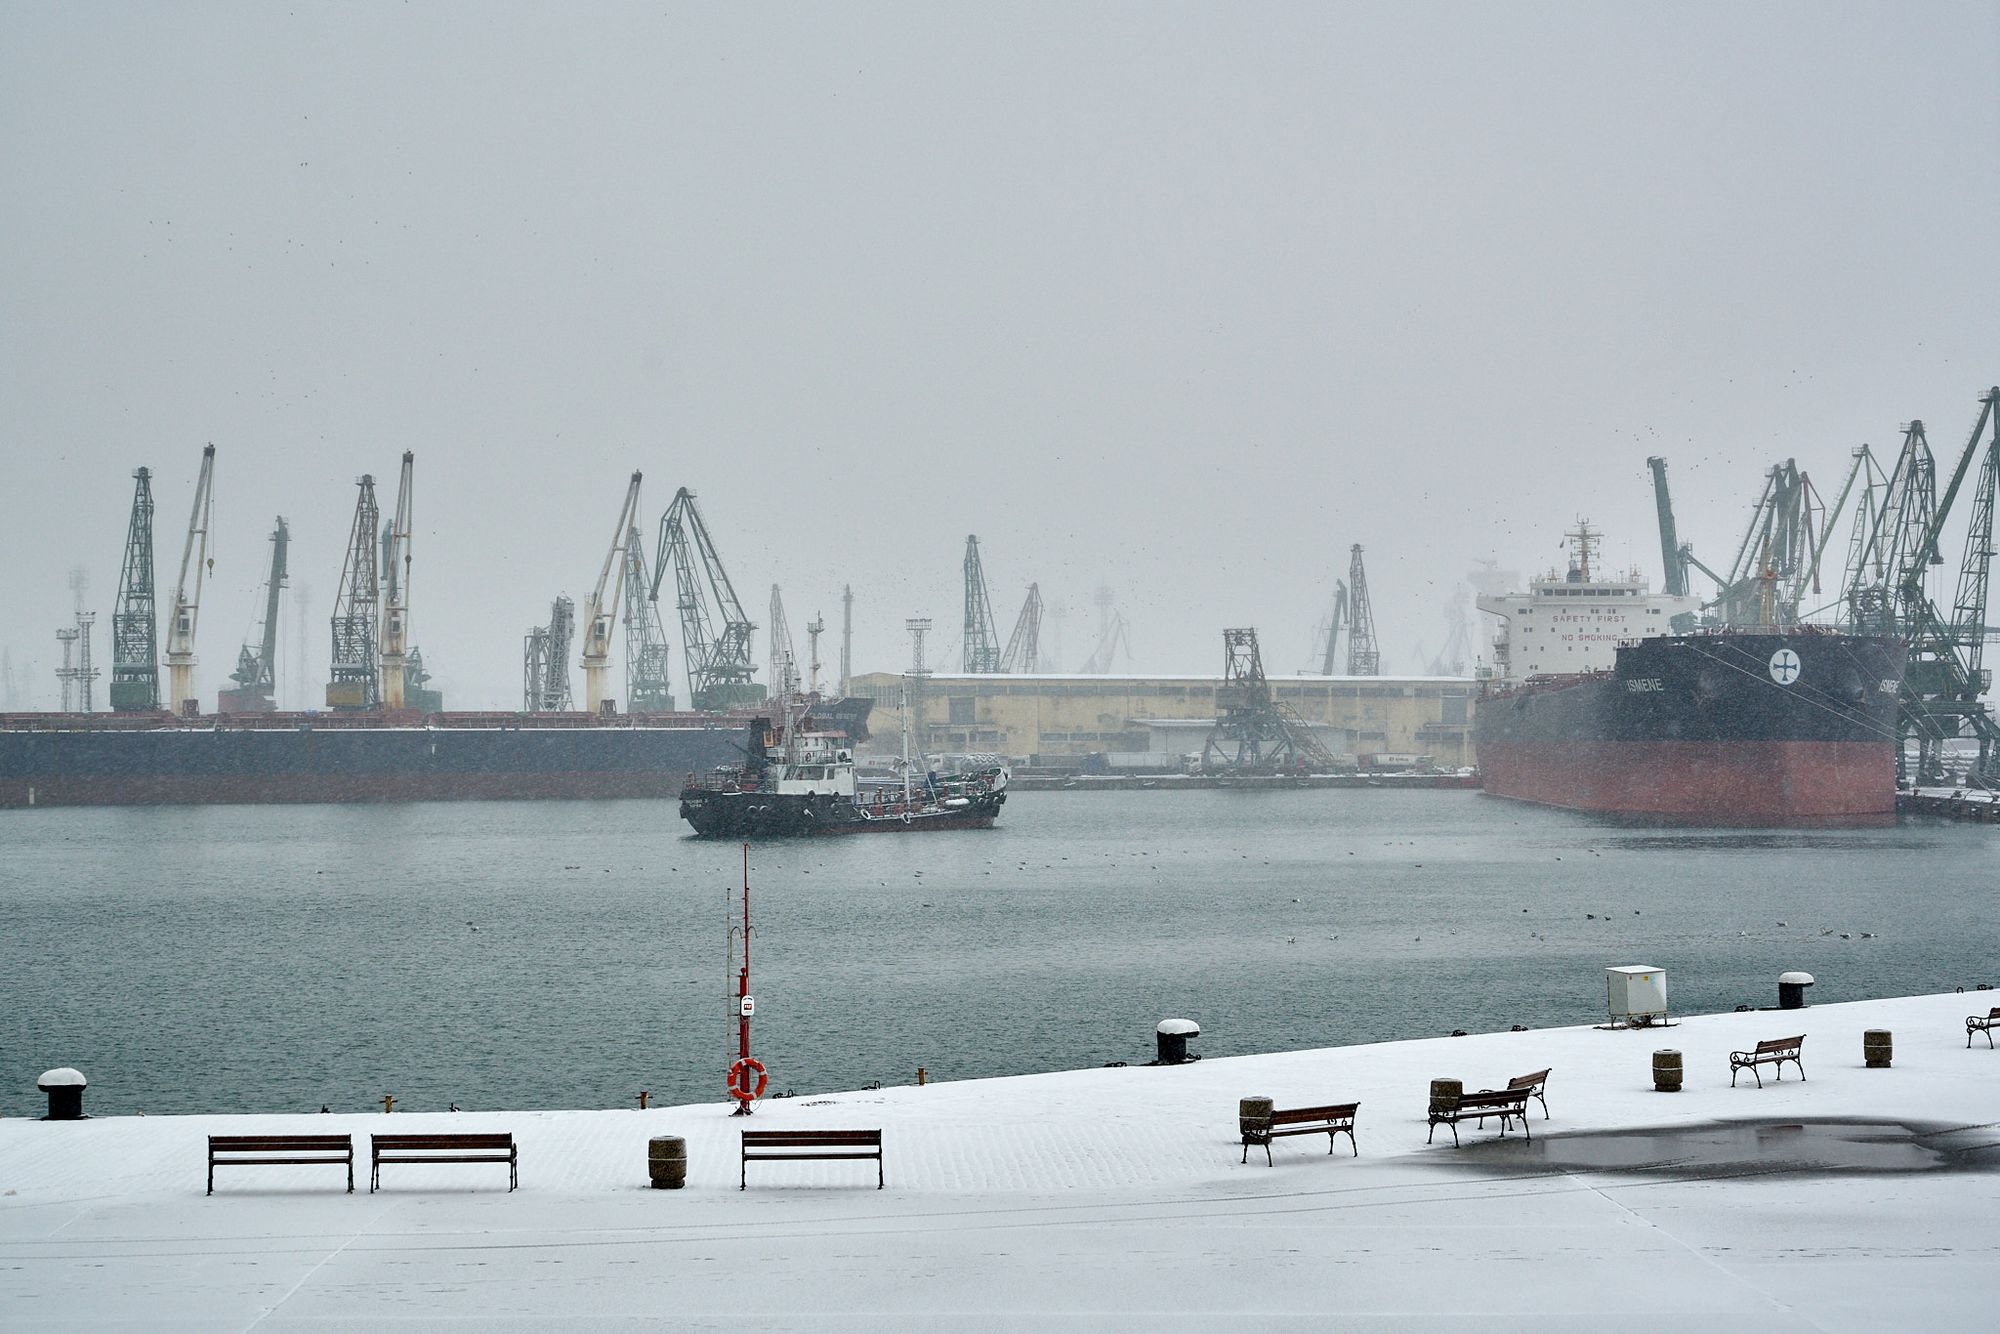 Varna port in winter